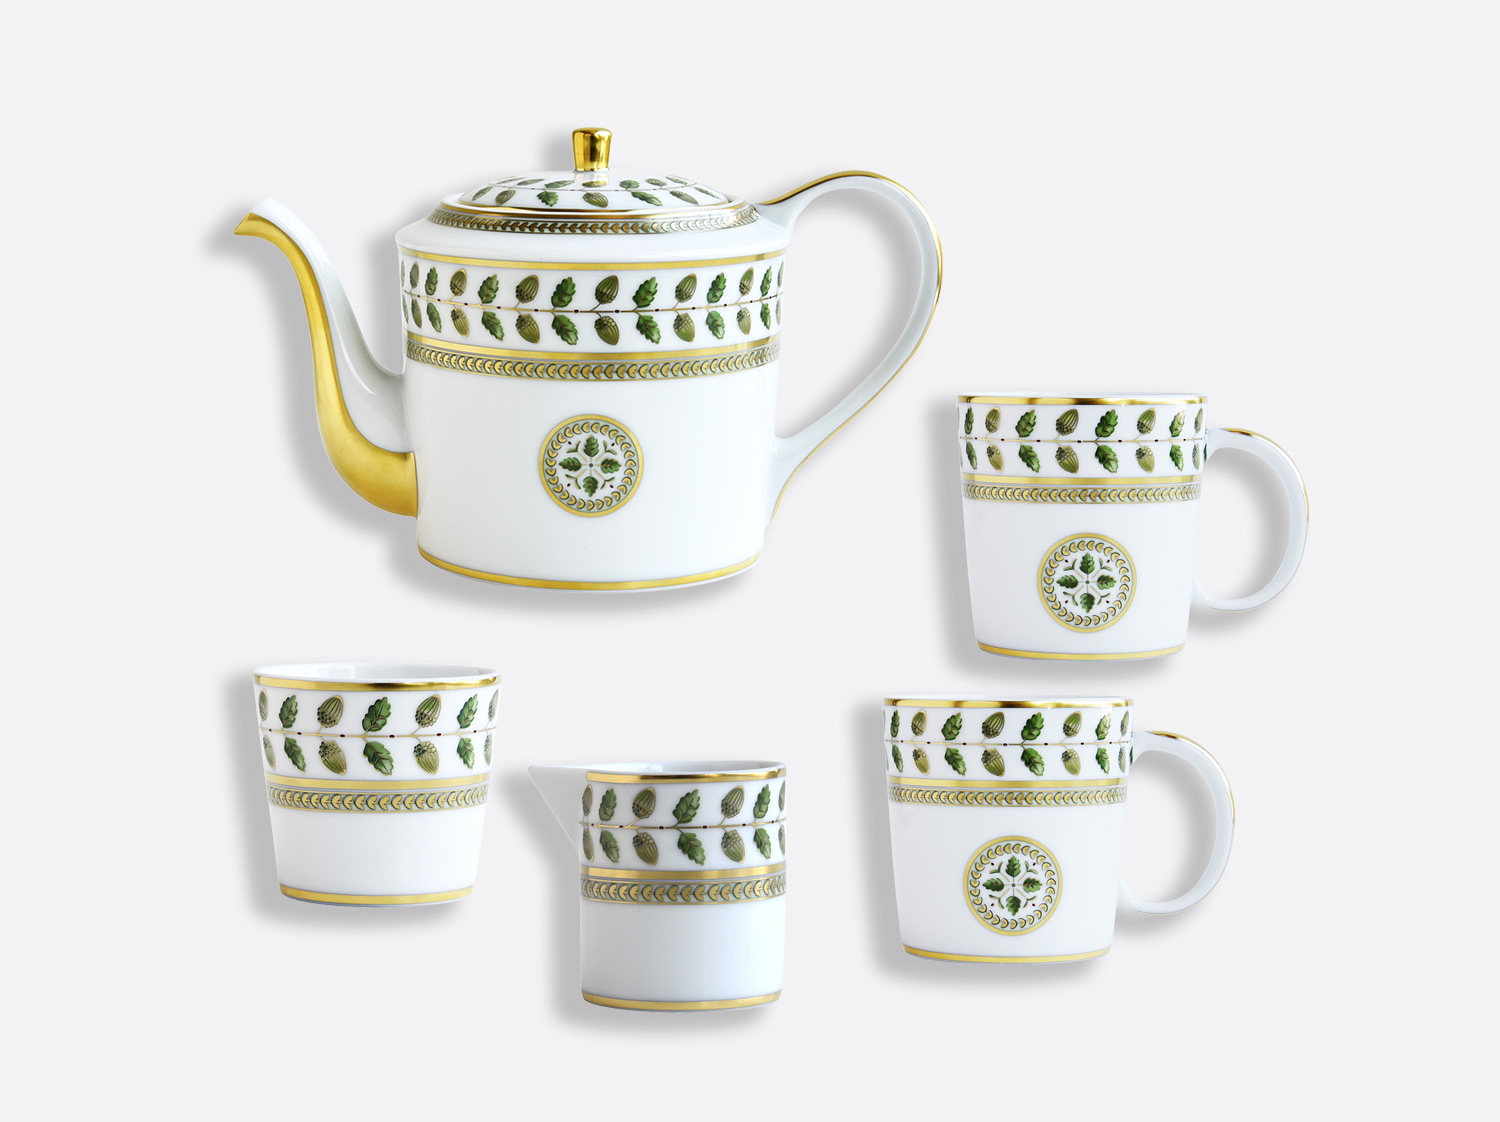 Gift Set of 1 Teapot, 2 Mugs, 1 Sugar Bowl, 1 Creamer